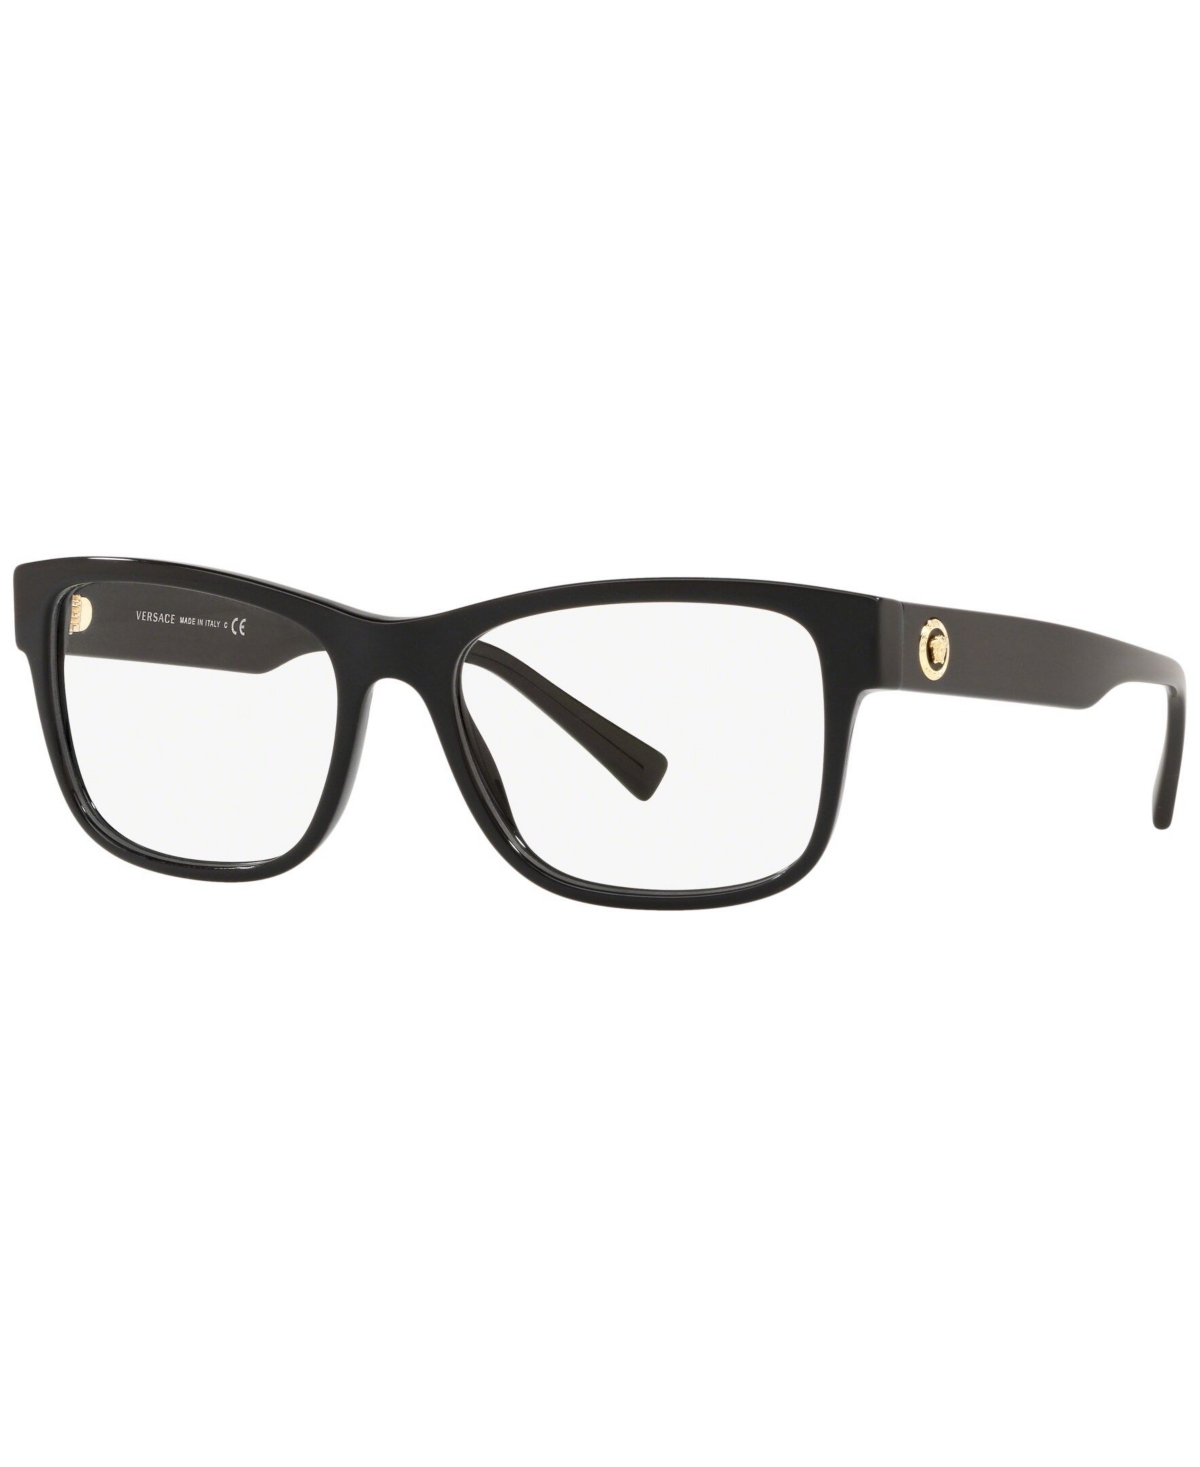 VE3266 Men's Pillow Eyeglasses - Black